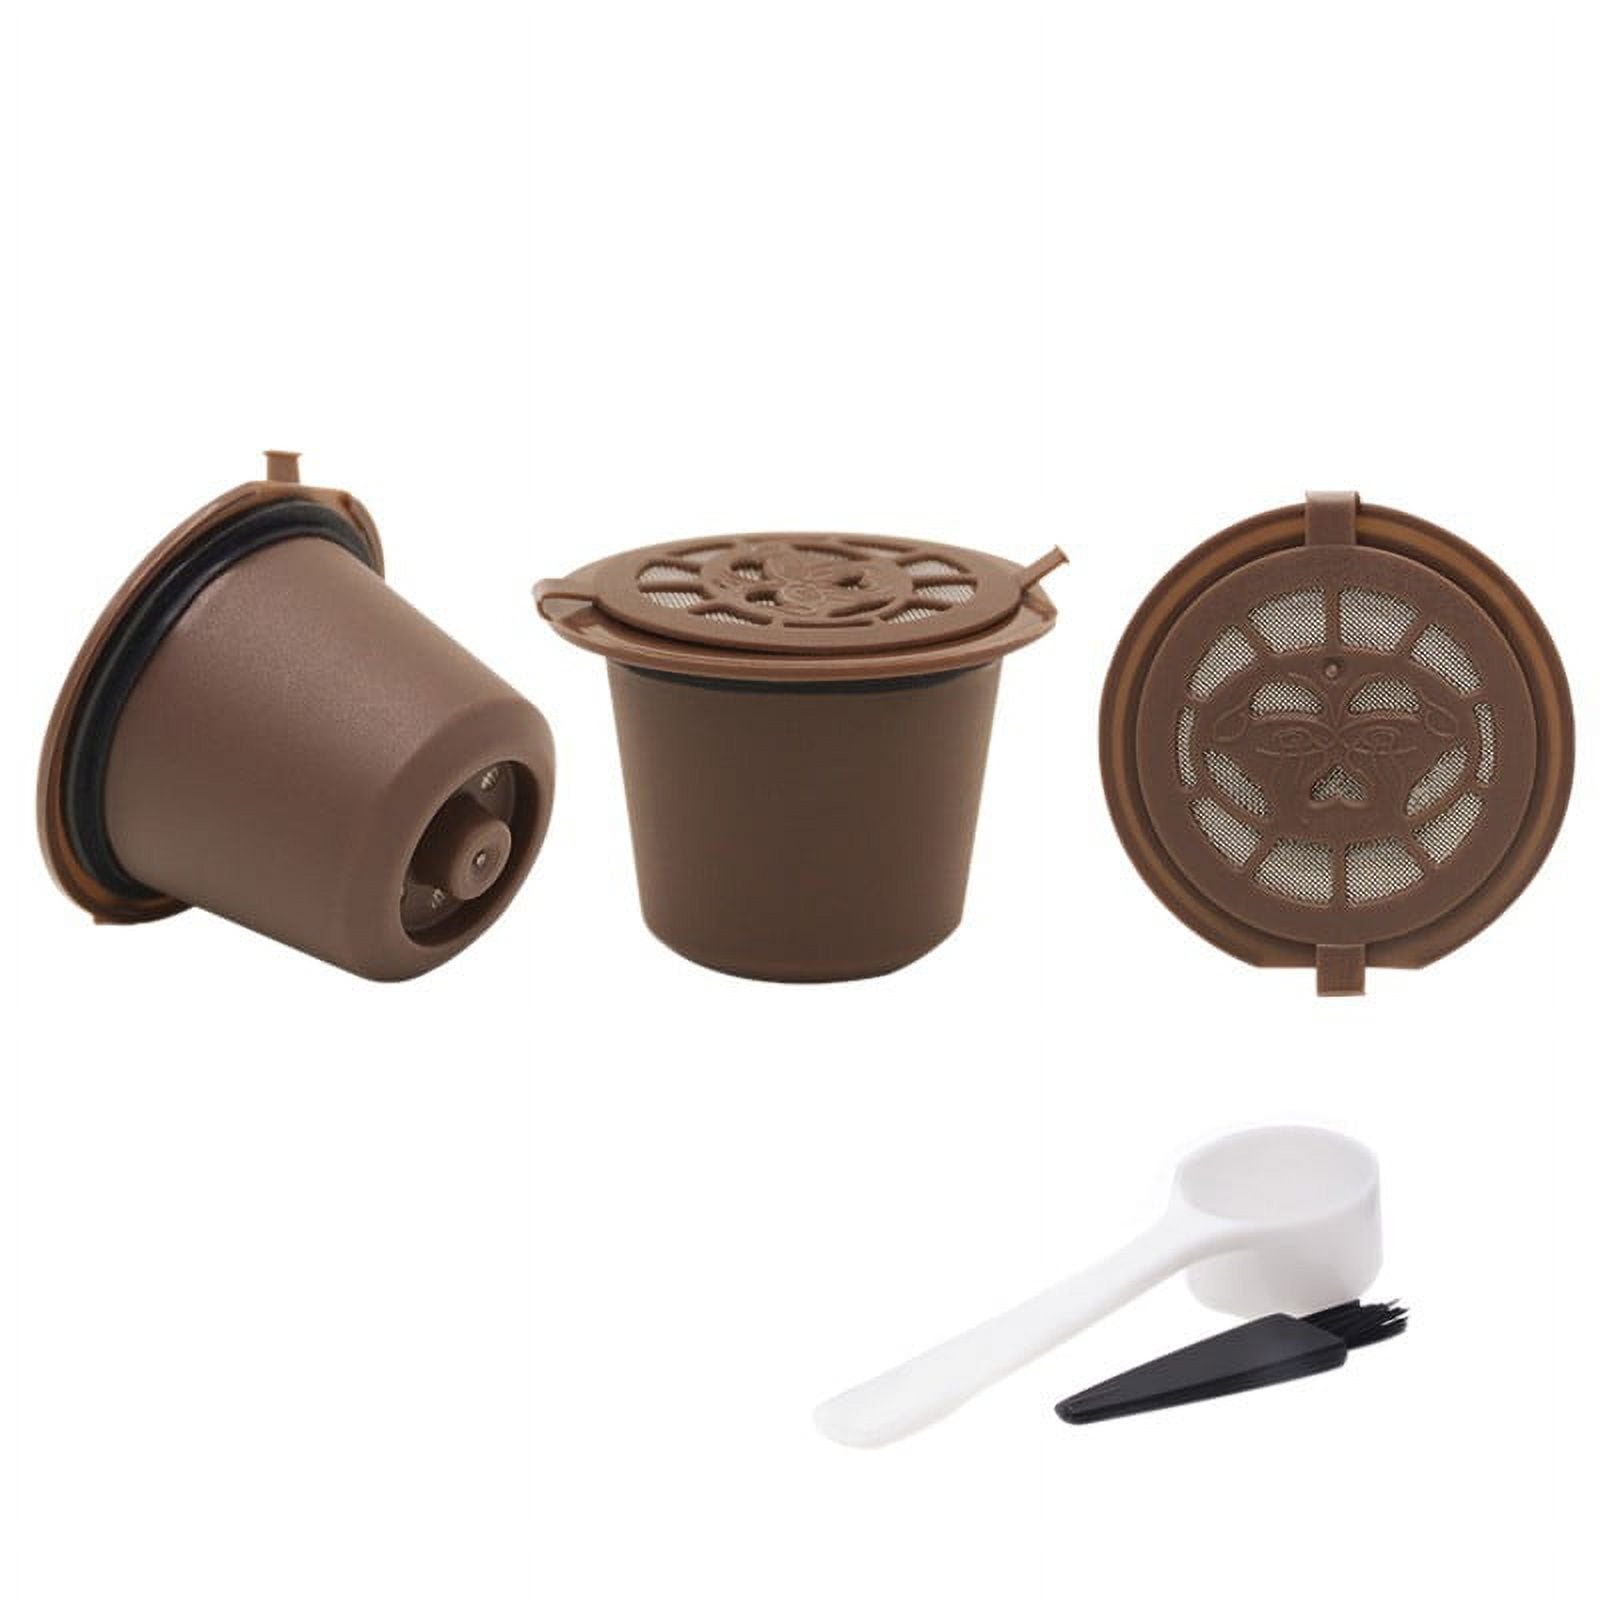 Capsule réutilisable & compatible avec Original Nespresso® – Café